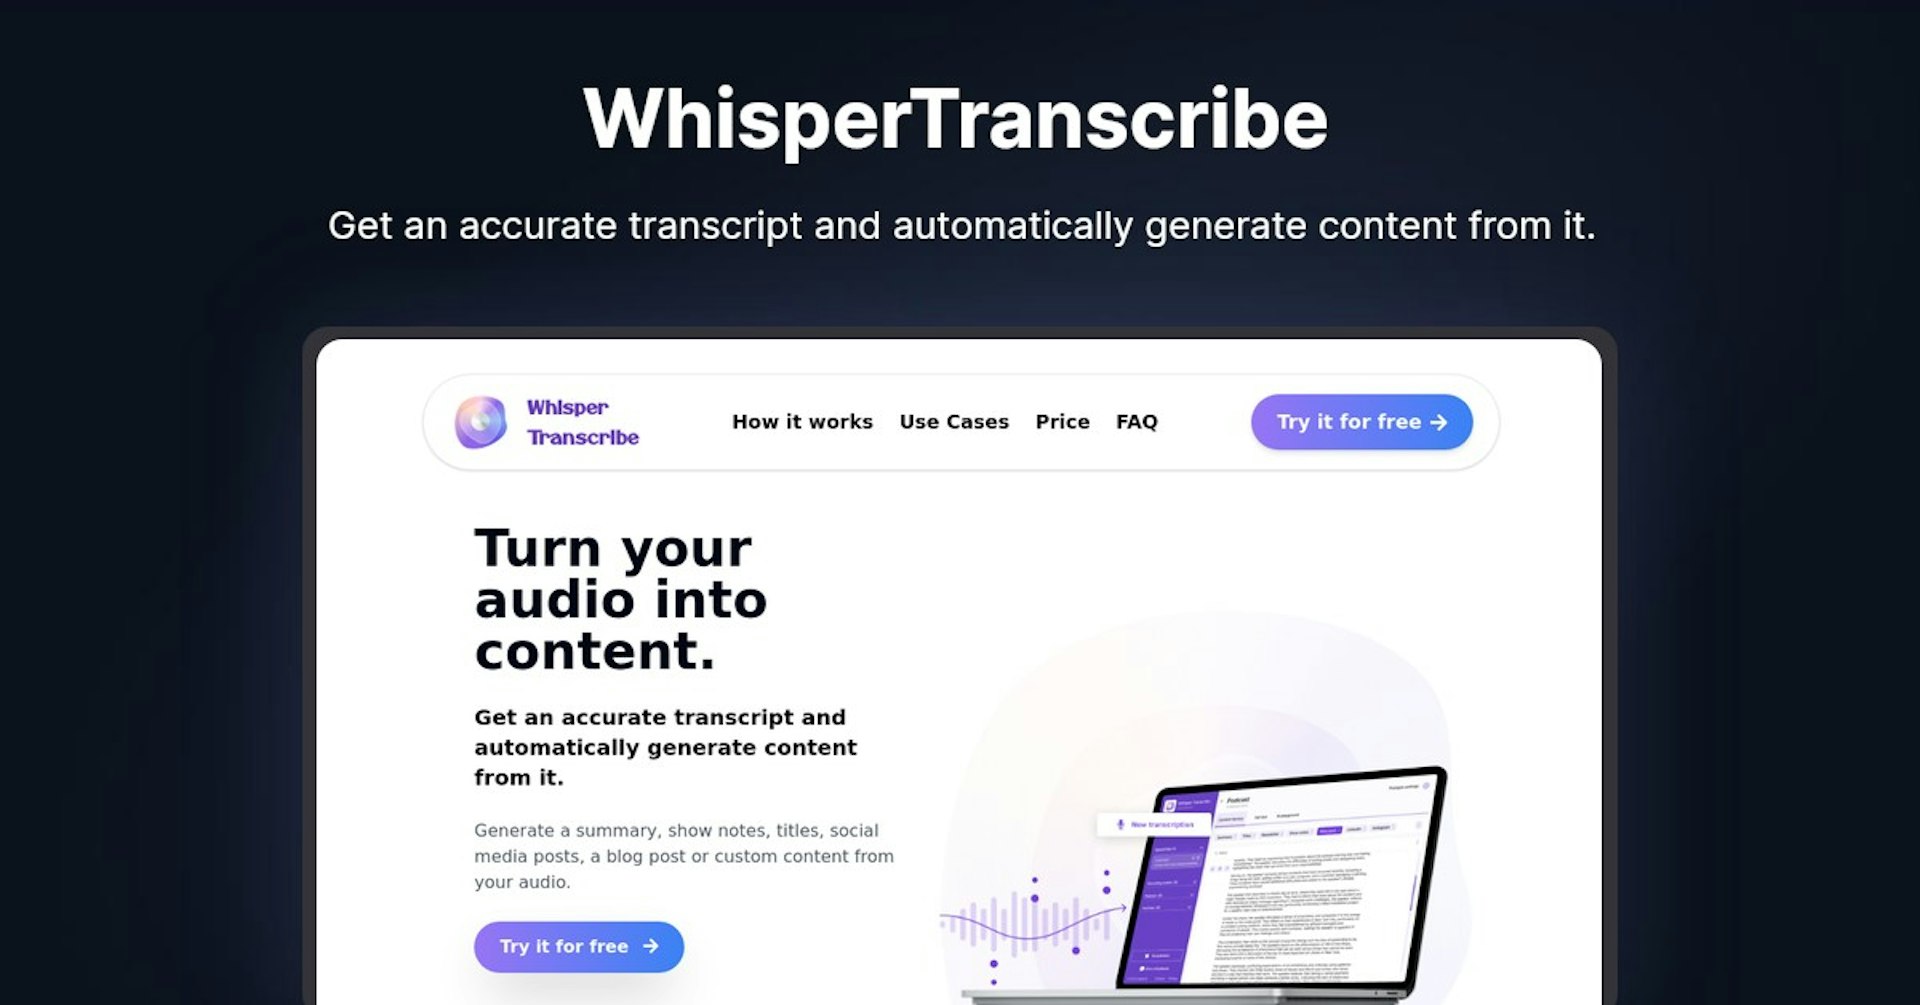 WhisperTranscribe